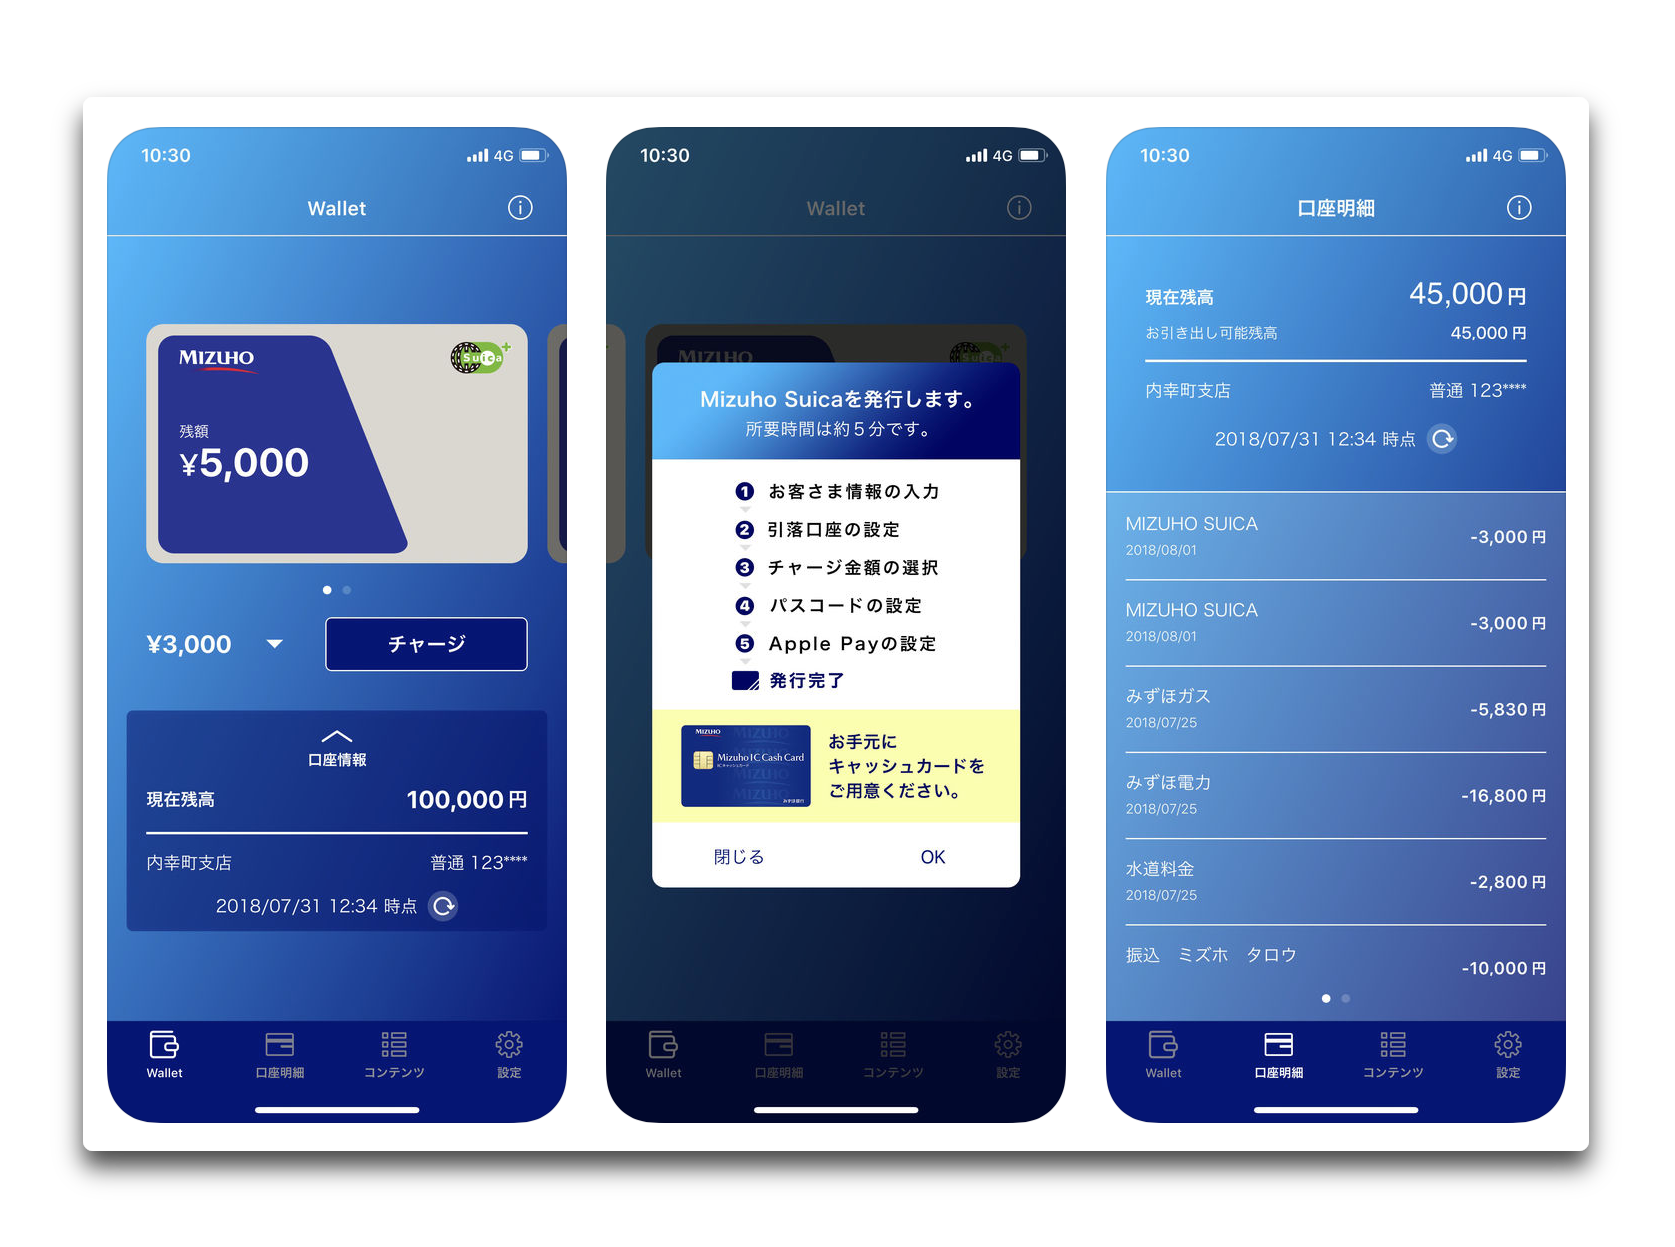 【iOS】みずほ銀行と JR 東日本が「Mizuho Suica」を8月1日より提供開始